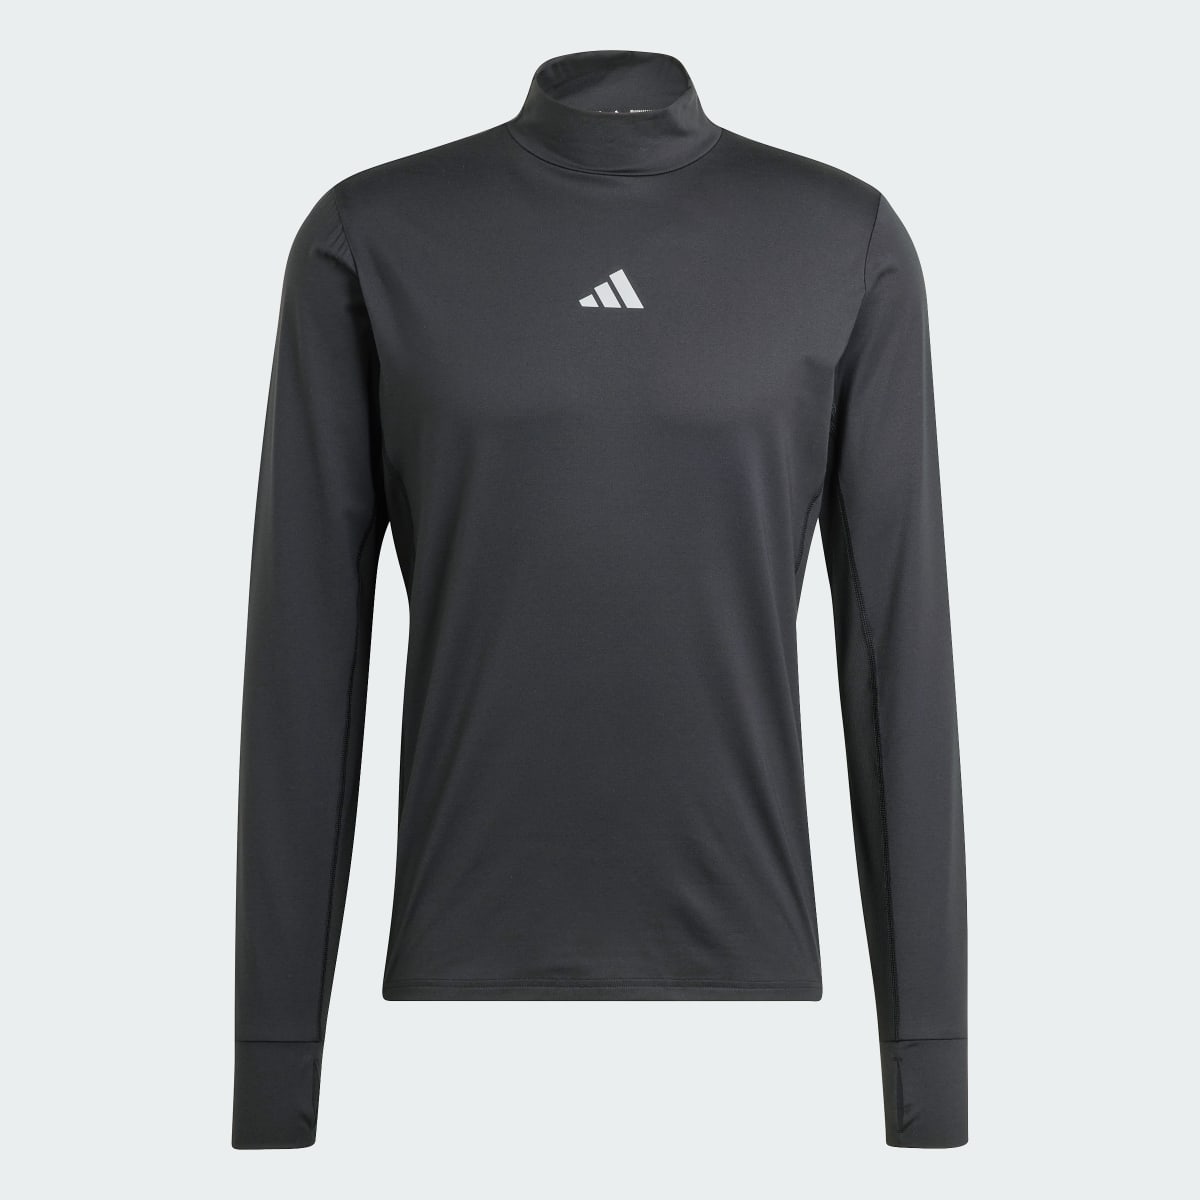 Adidas Koszulka Ultimate Long Sleeve. 5